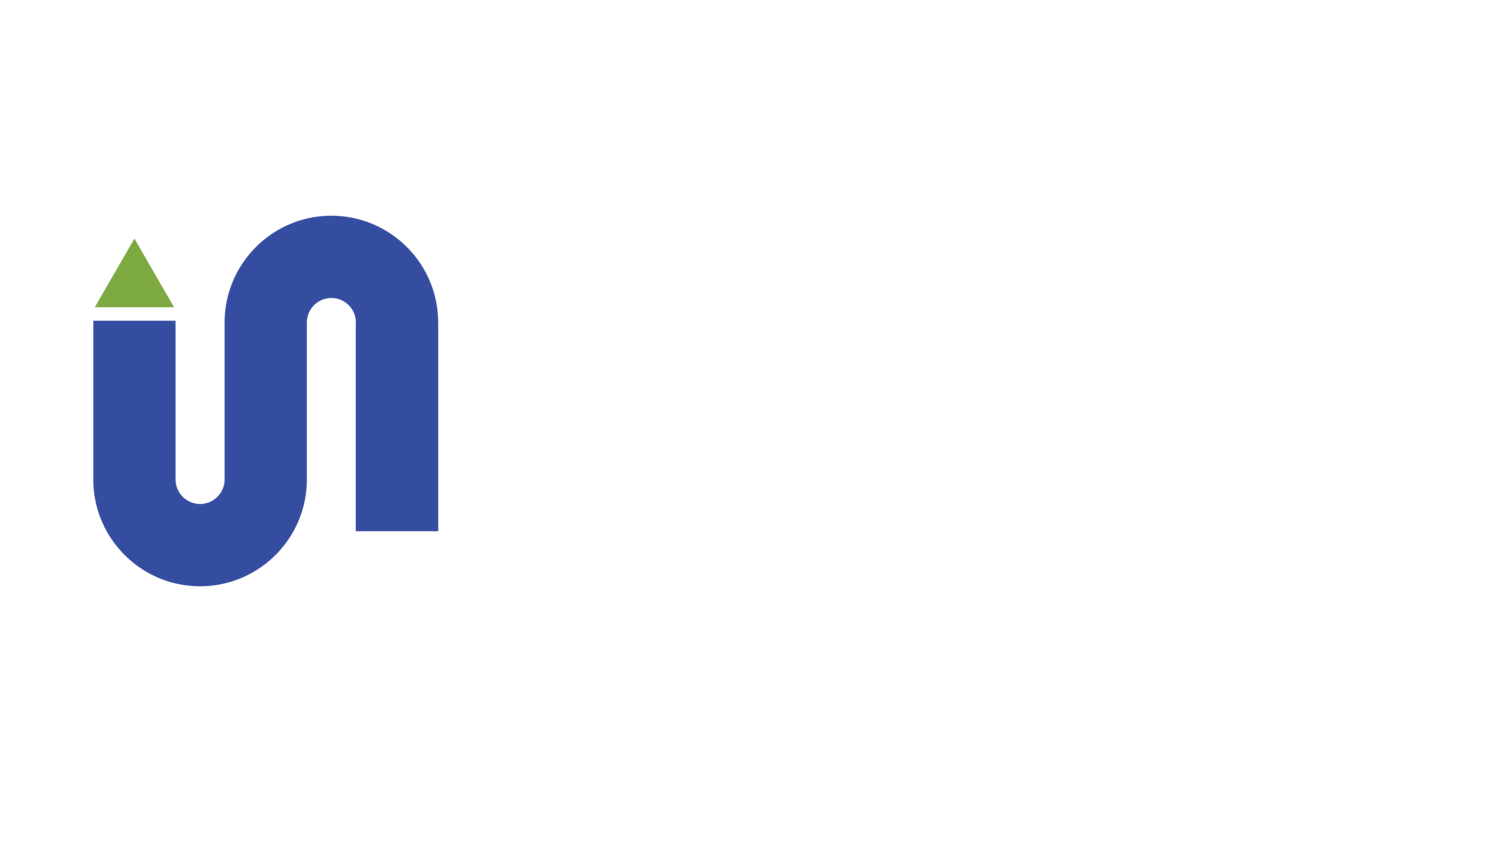 Inland North Waste